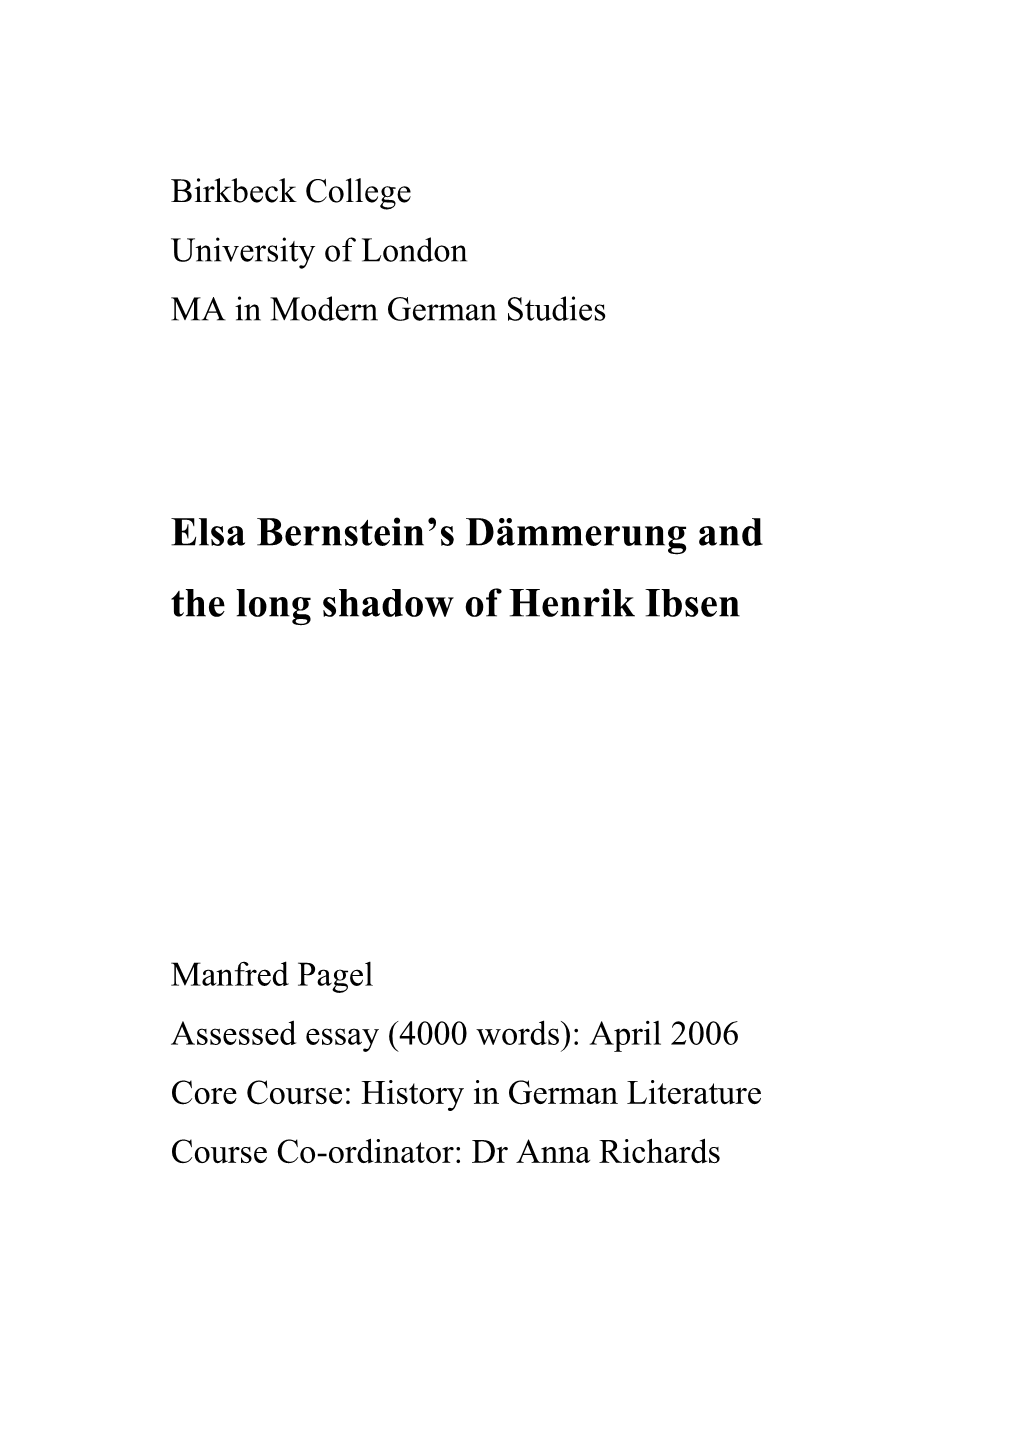 Elsa Bernstein's Dämmerung and the Long Shadow of Henrik Ibsen